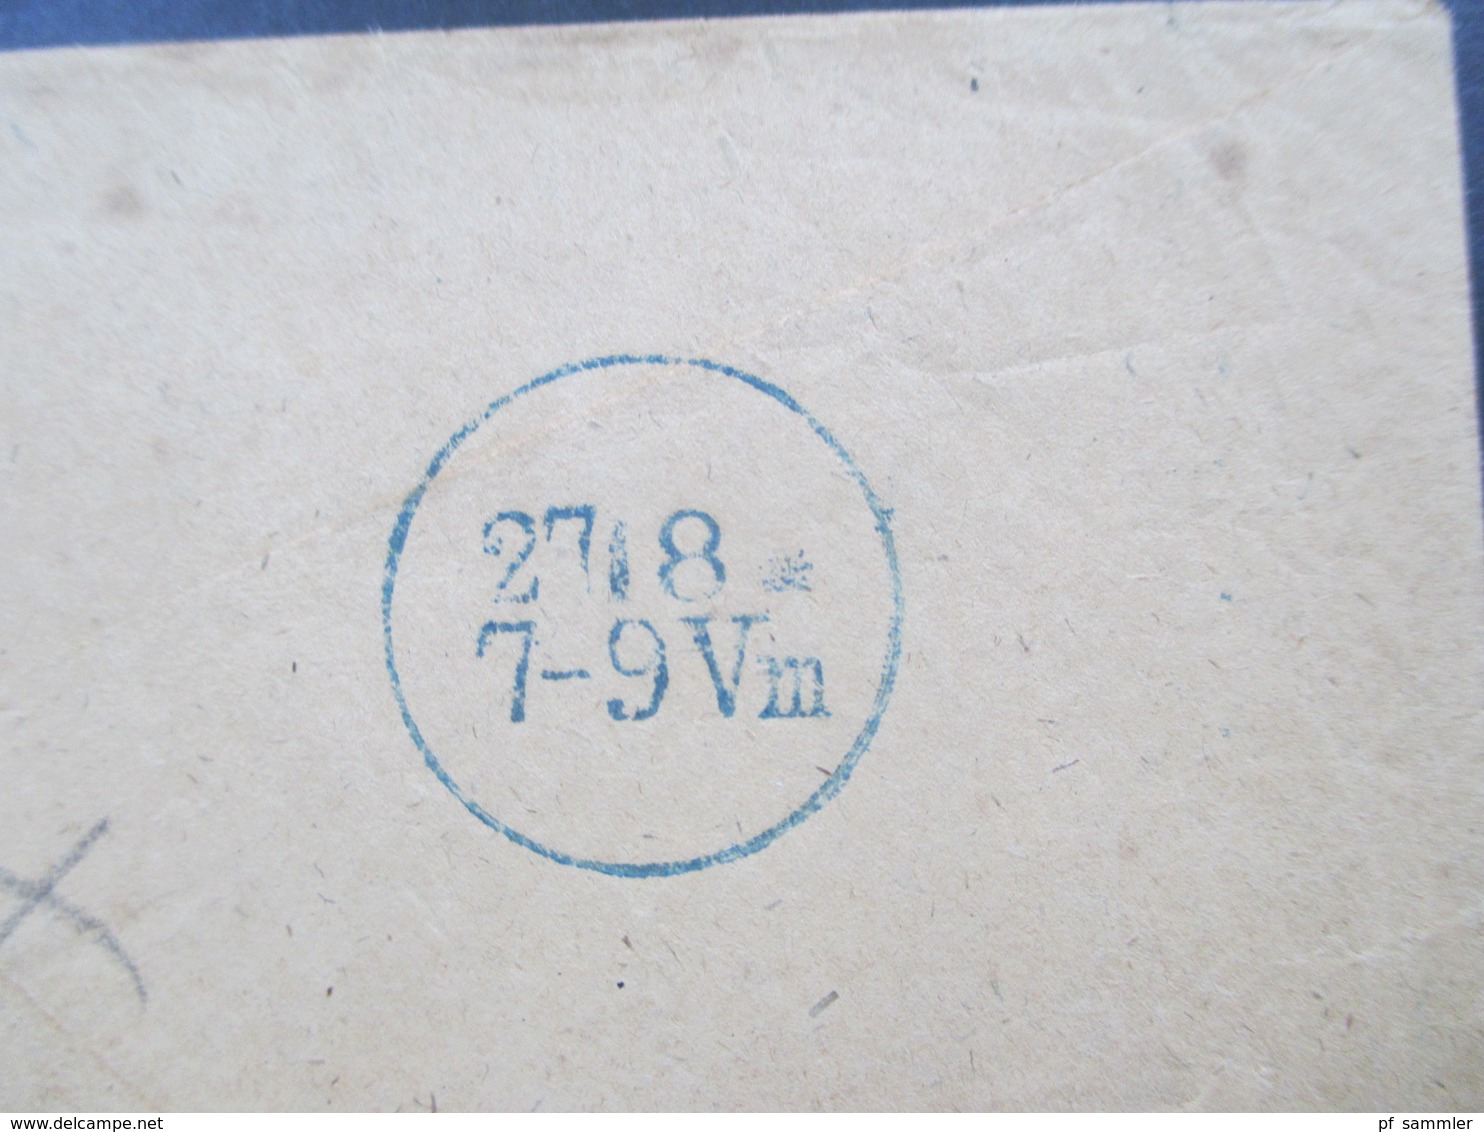 AD / Vorphila Preussen 1863 Westpommern Rahmenstempel R2 Zehden Bartaxe Mit Rot Und Blaustift - Storia Postale